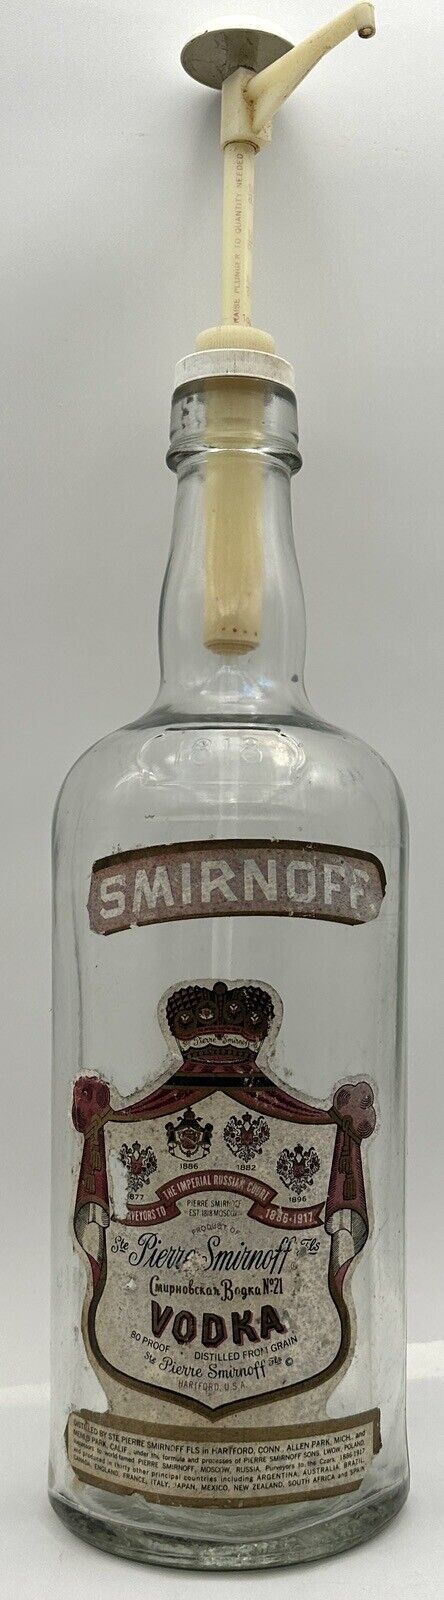 Vintage Large Smirnoff Vodka Glass 1 Gallon Bottle 80 Proof Pierre Pump Empty